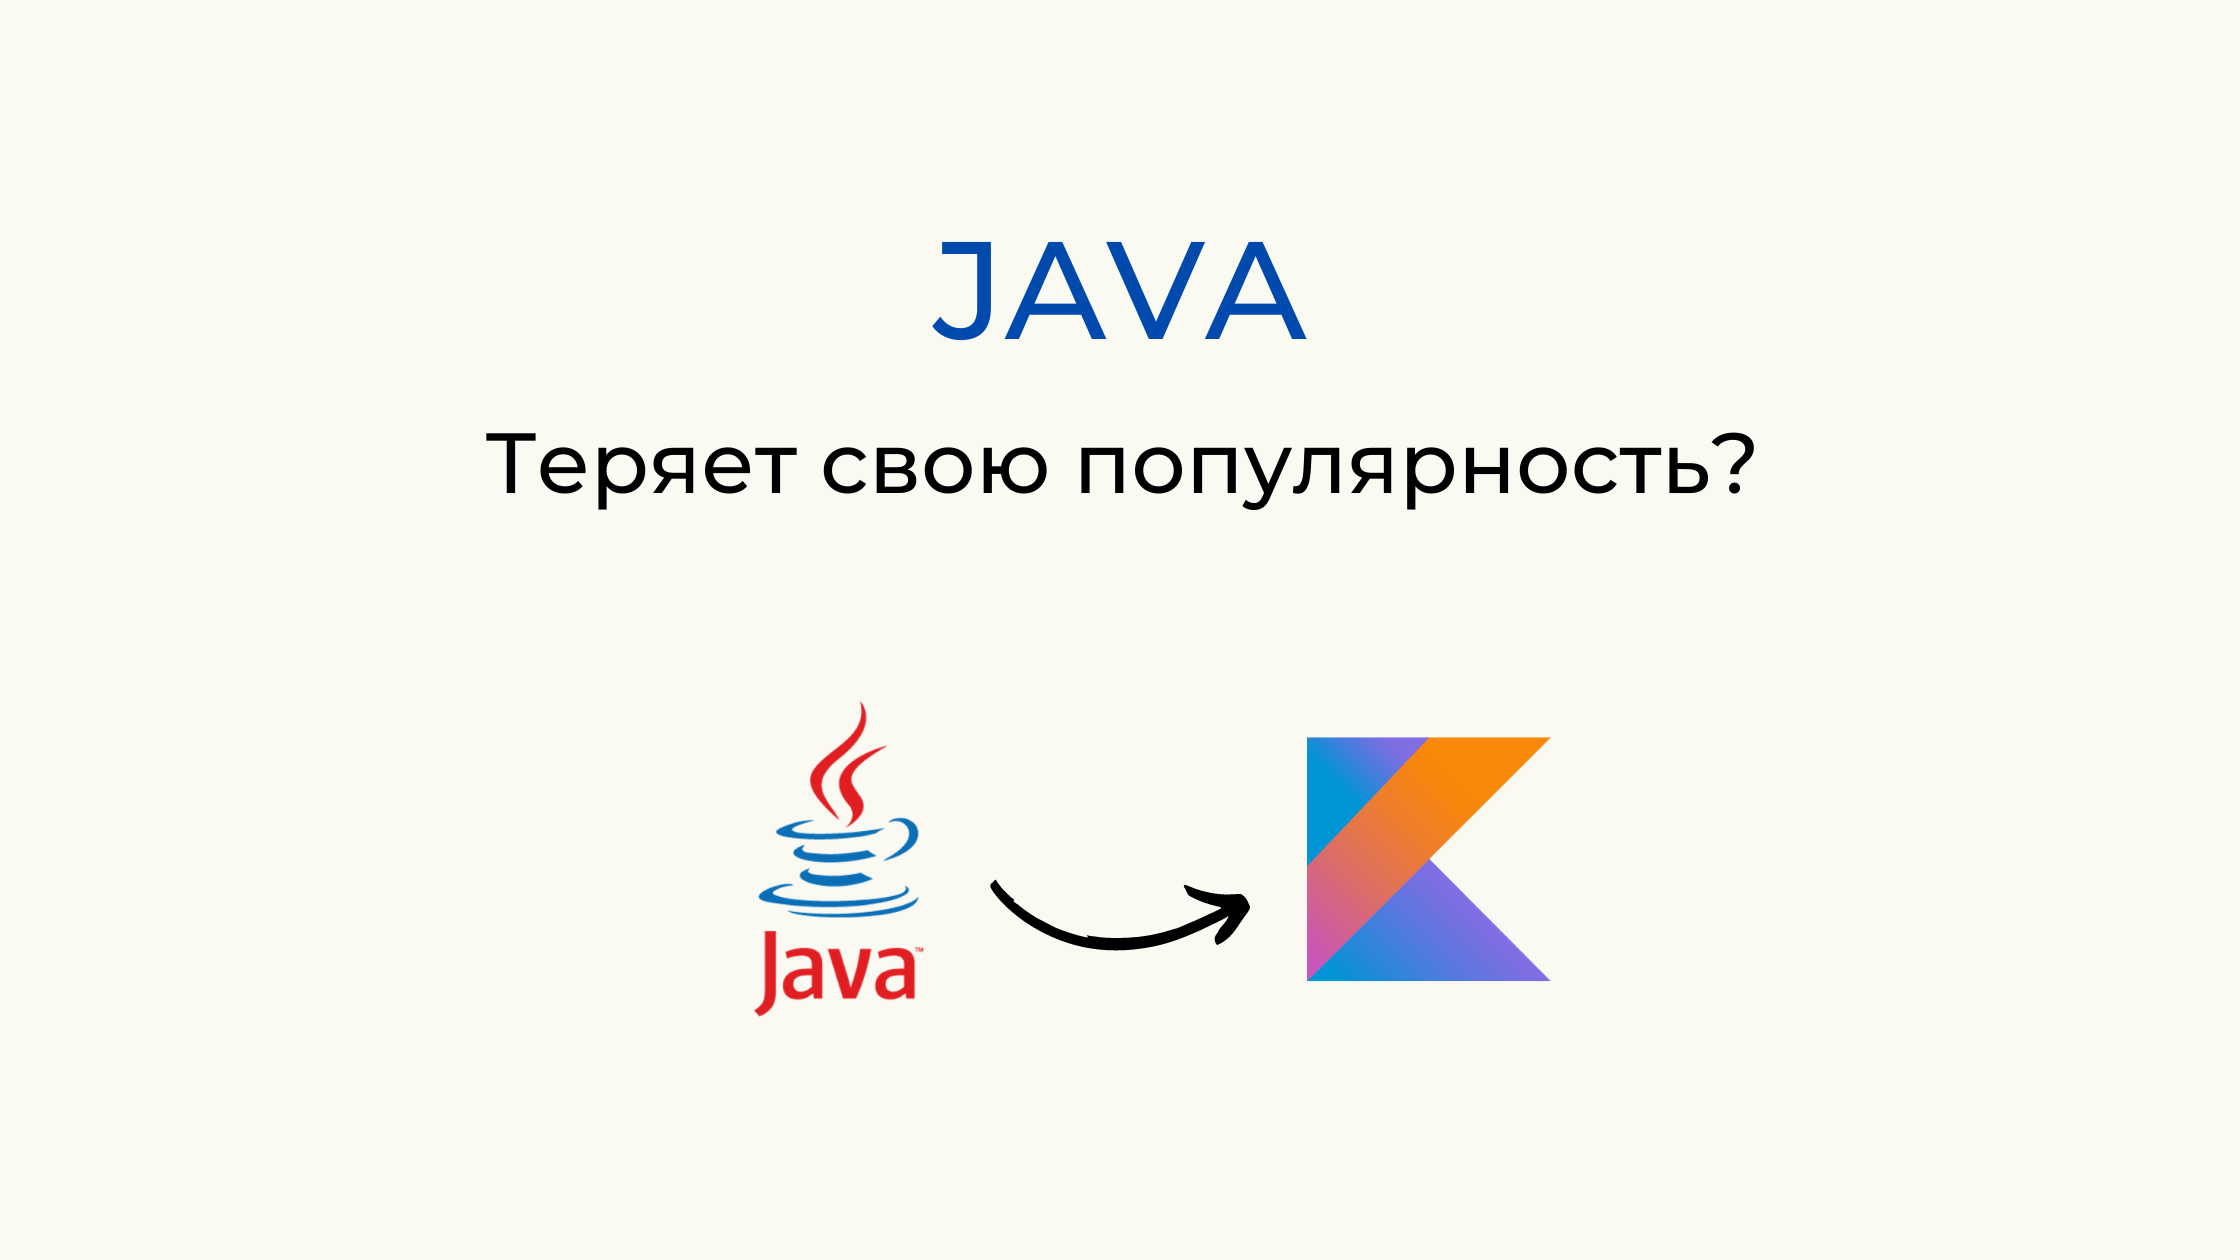 ТОП 5 приложений, мигрировавших с Java на Kotlin